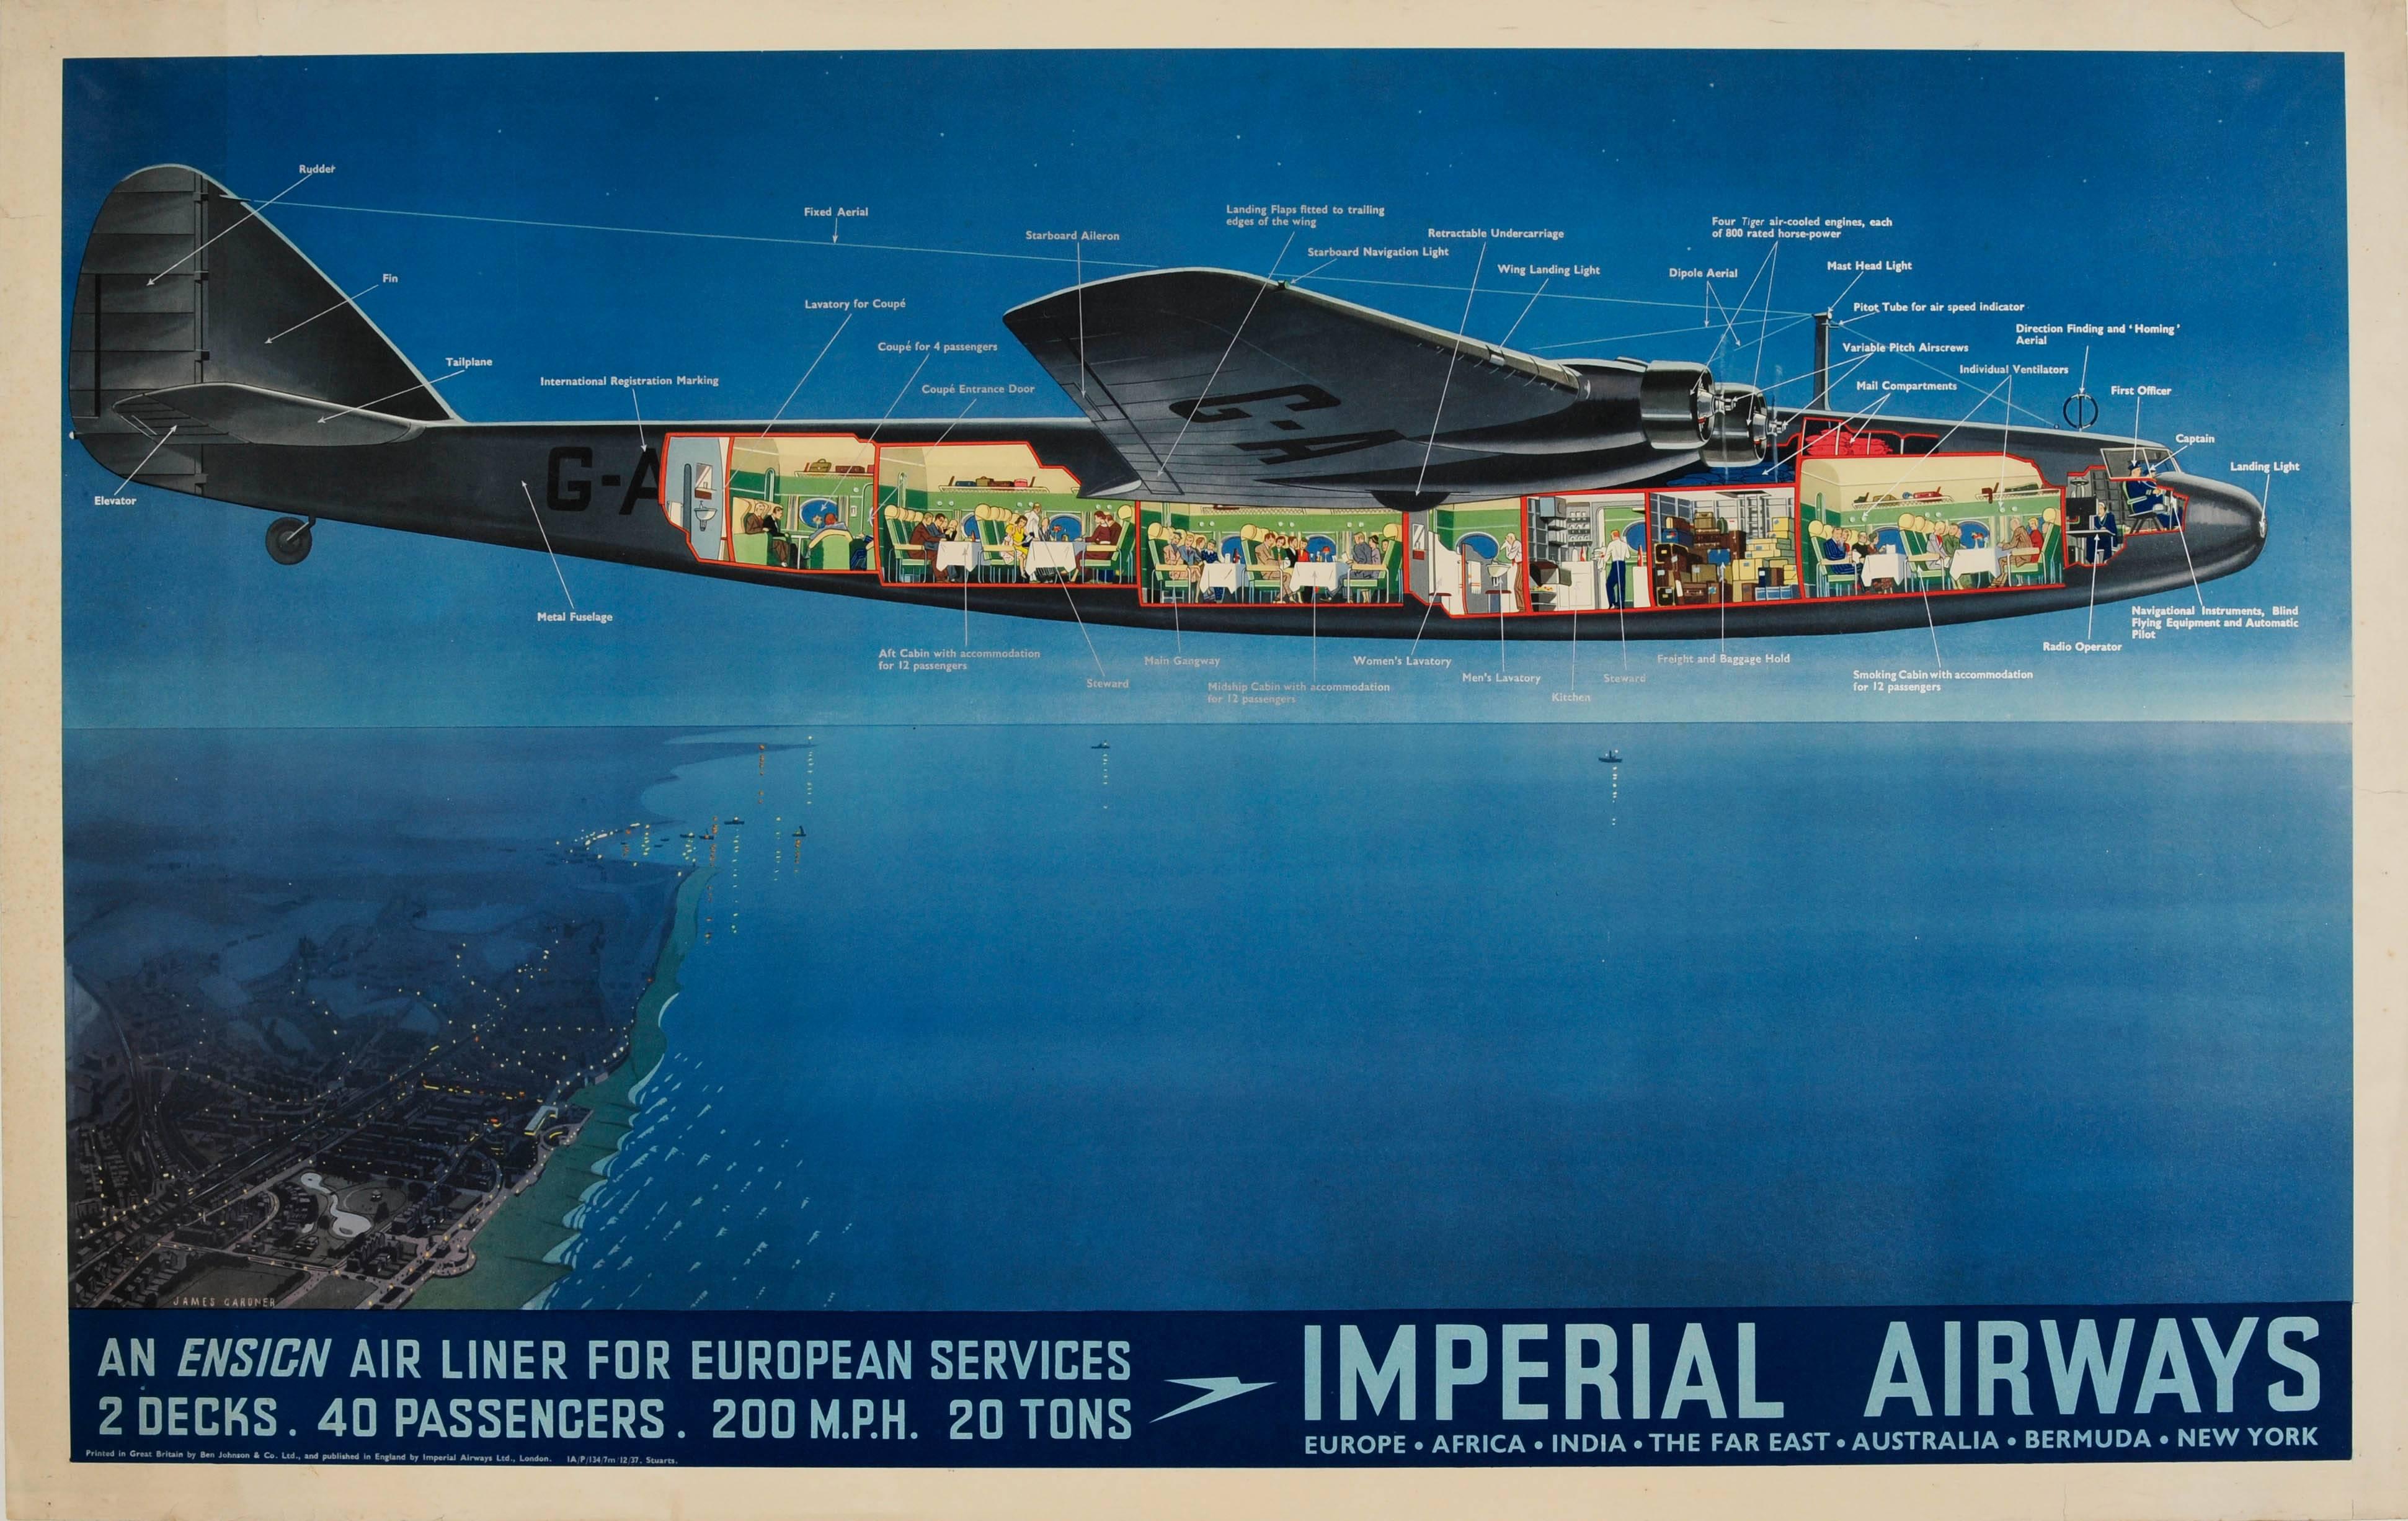 Original Vintage Imperial Airways Ensign Air Liner Travel Advertising Poster